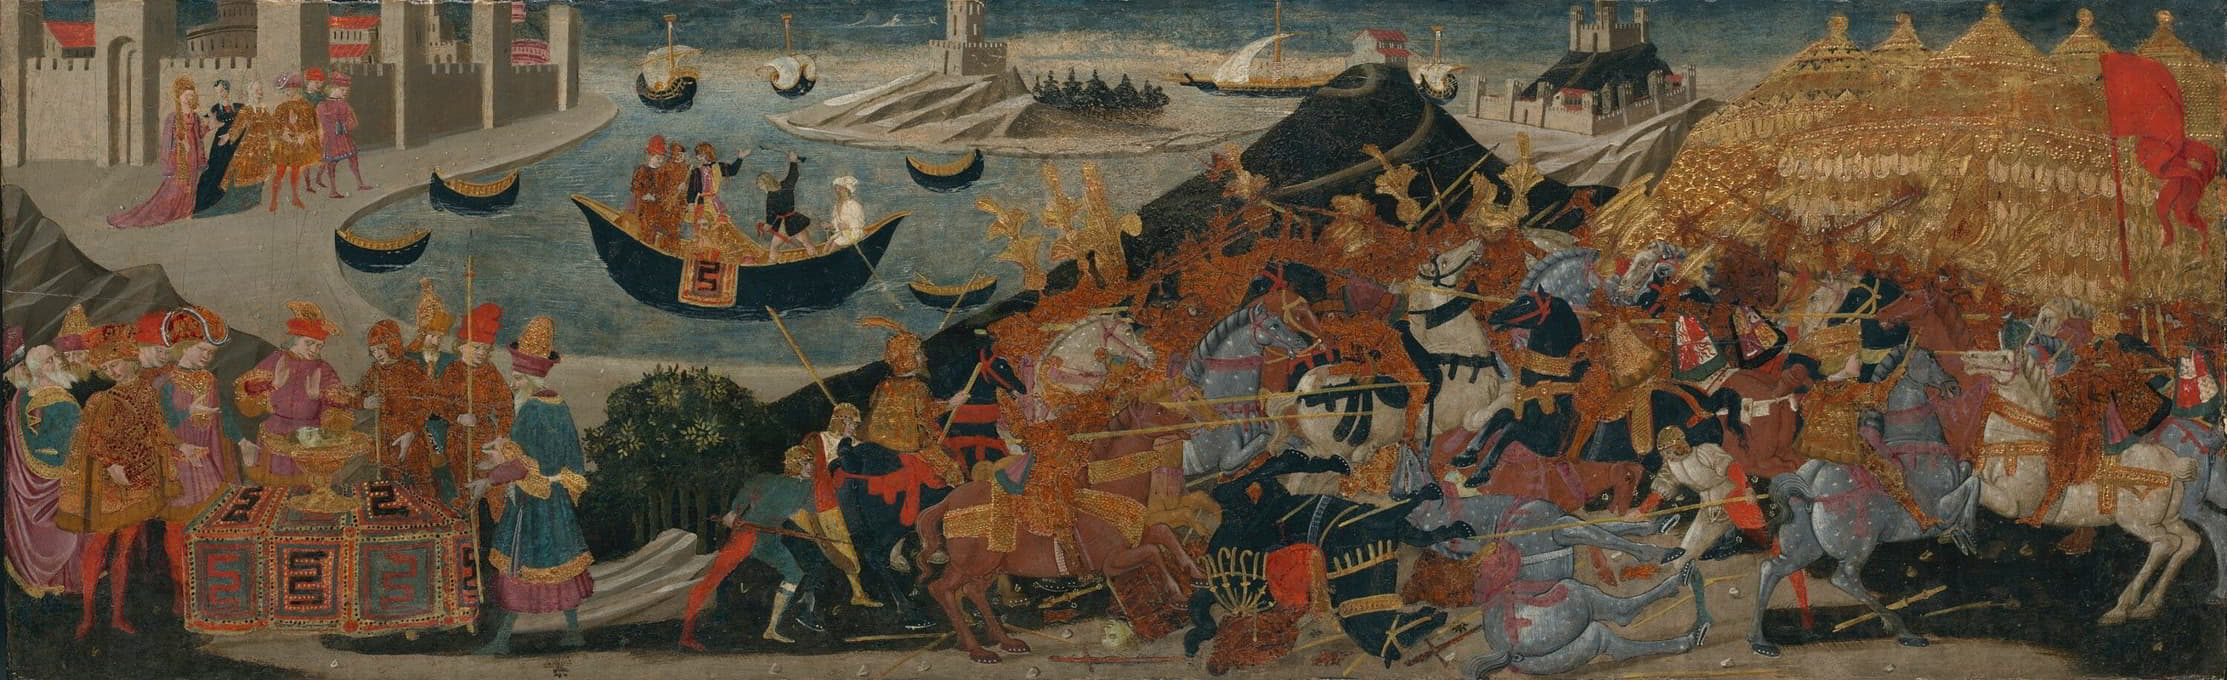 法萨卢斯战役和庞培之死